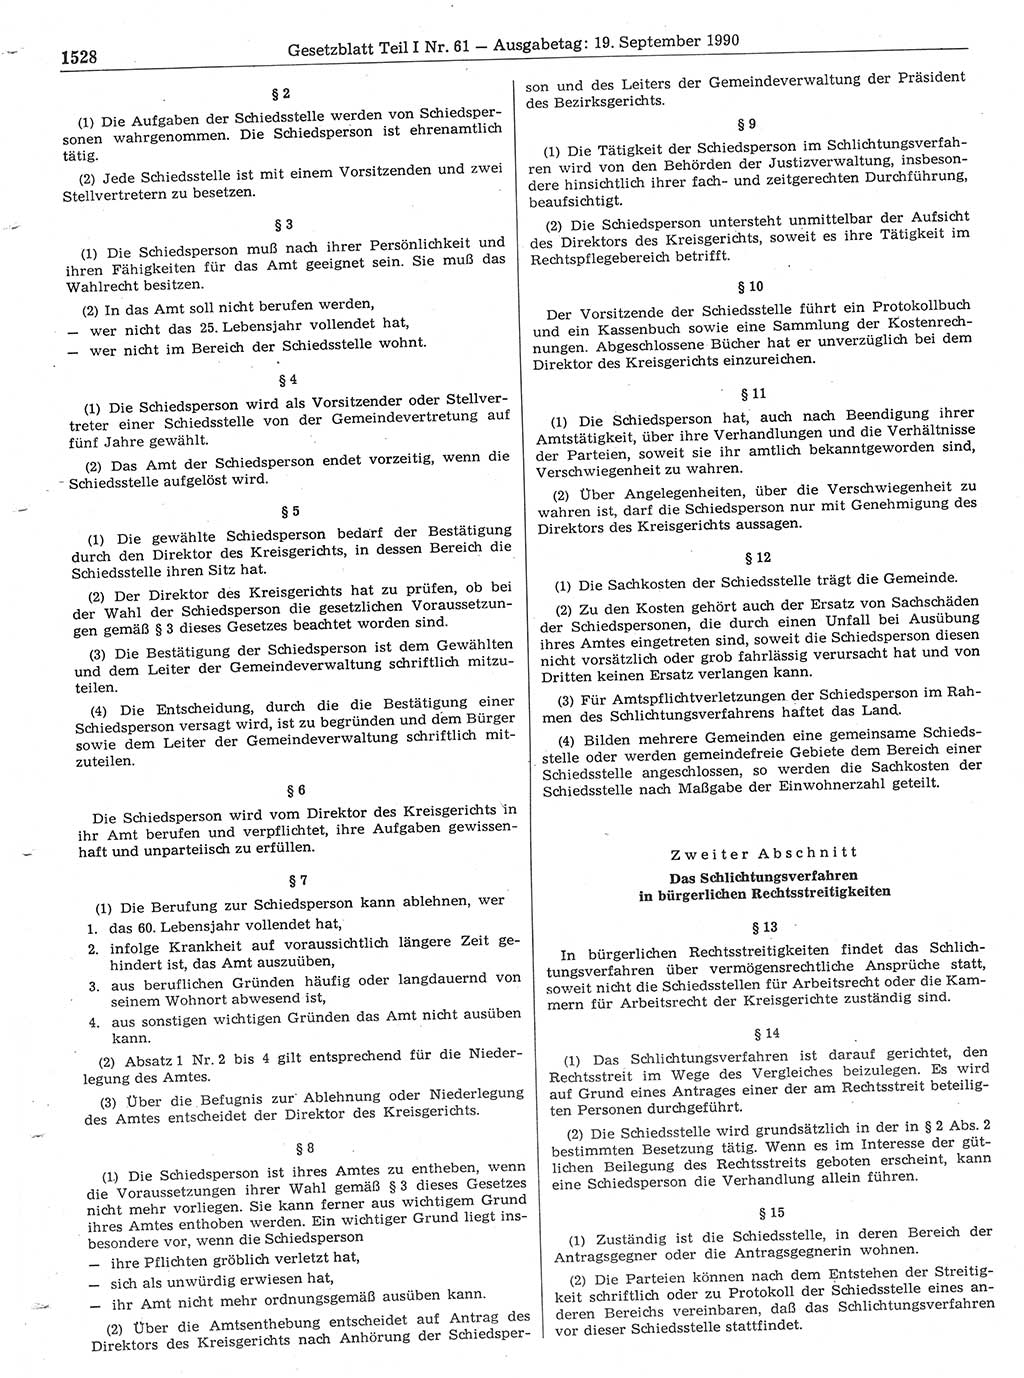 Gesetzblatt (GBl.) der Deutschen Demokratischen Republik (DDR) Teil Ⅰ 1990, Seite 1528 (GBl. DDR Ⅰ 1990, S. 1528)